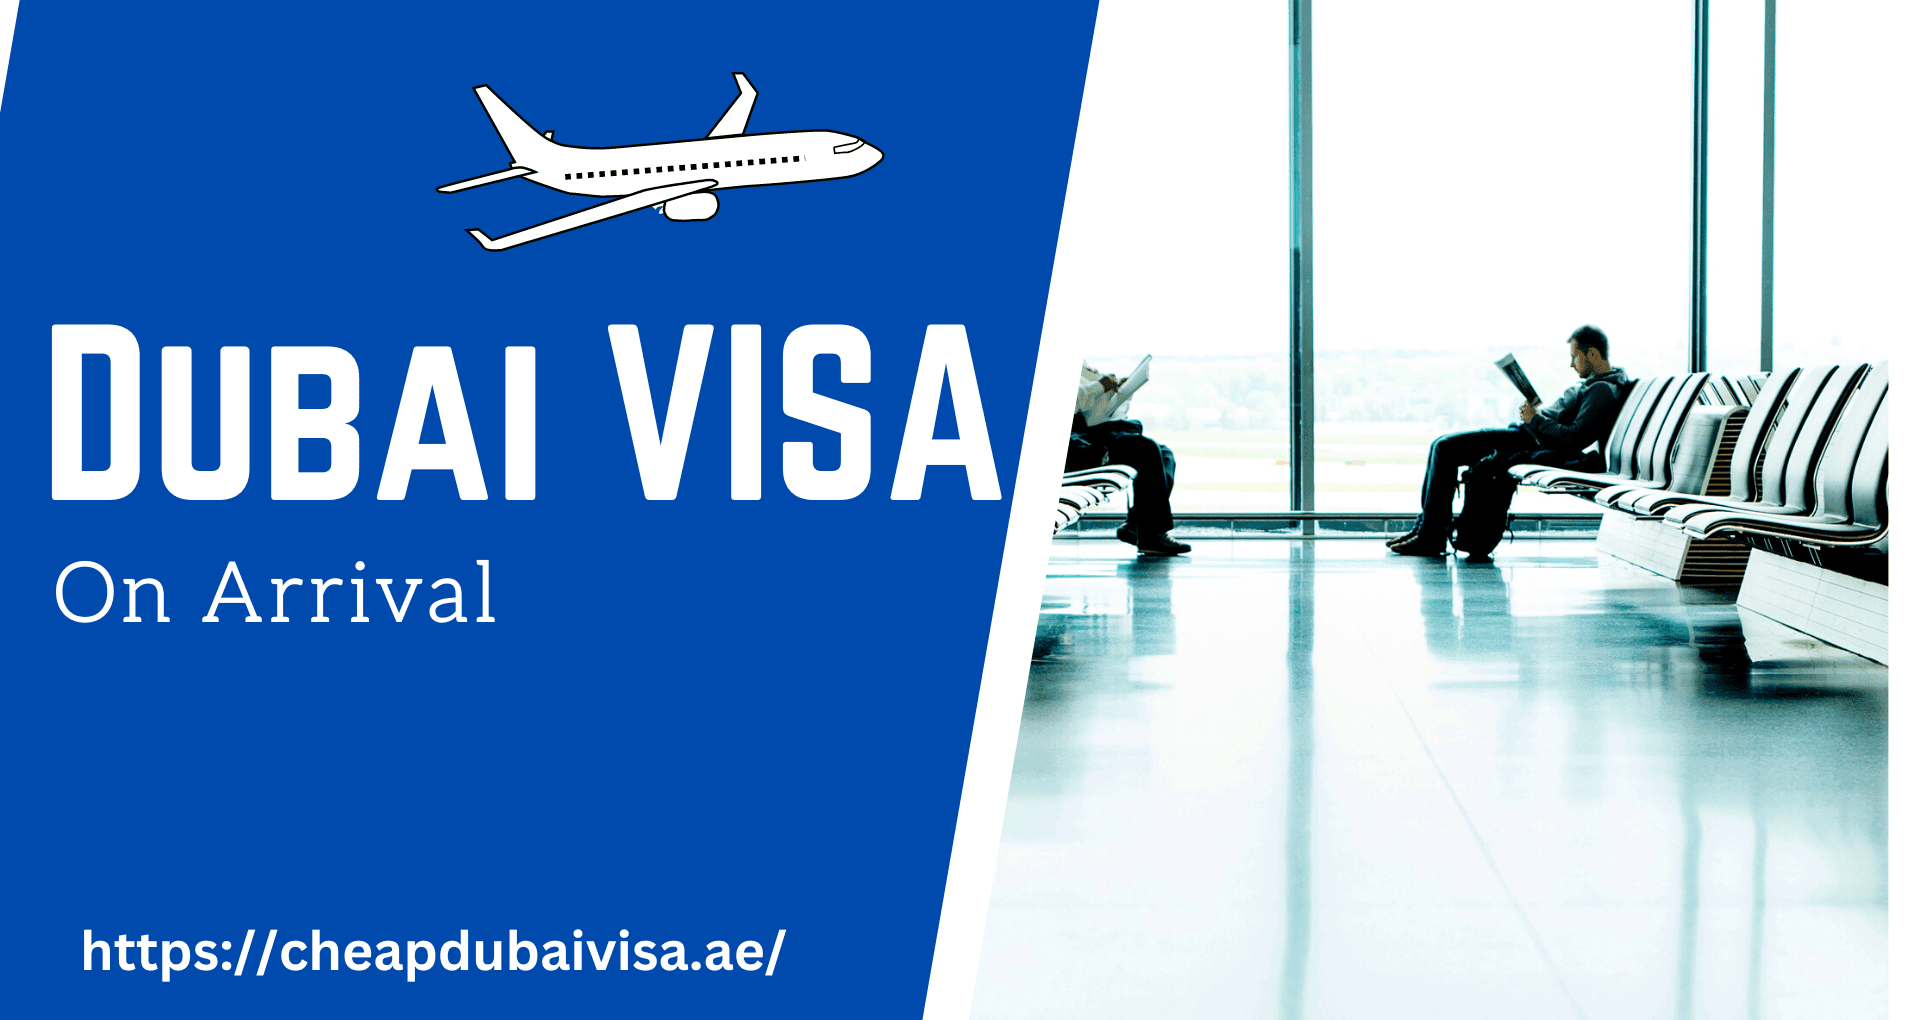 Dubai visa on arrival